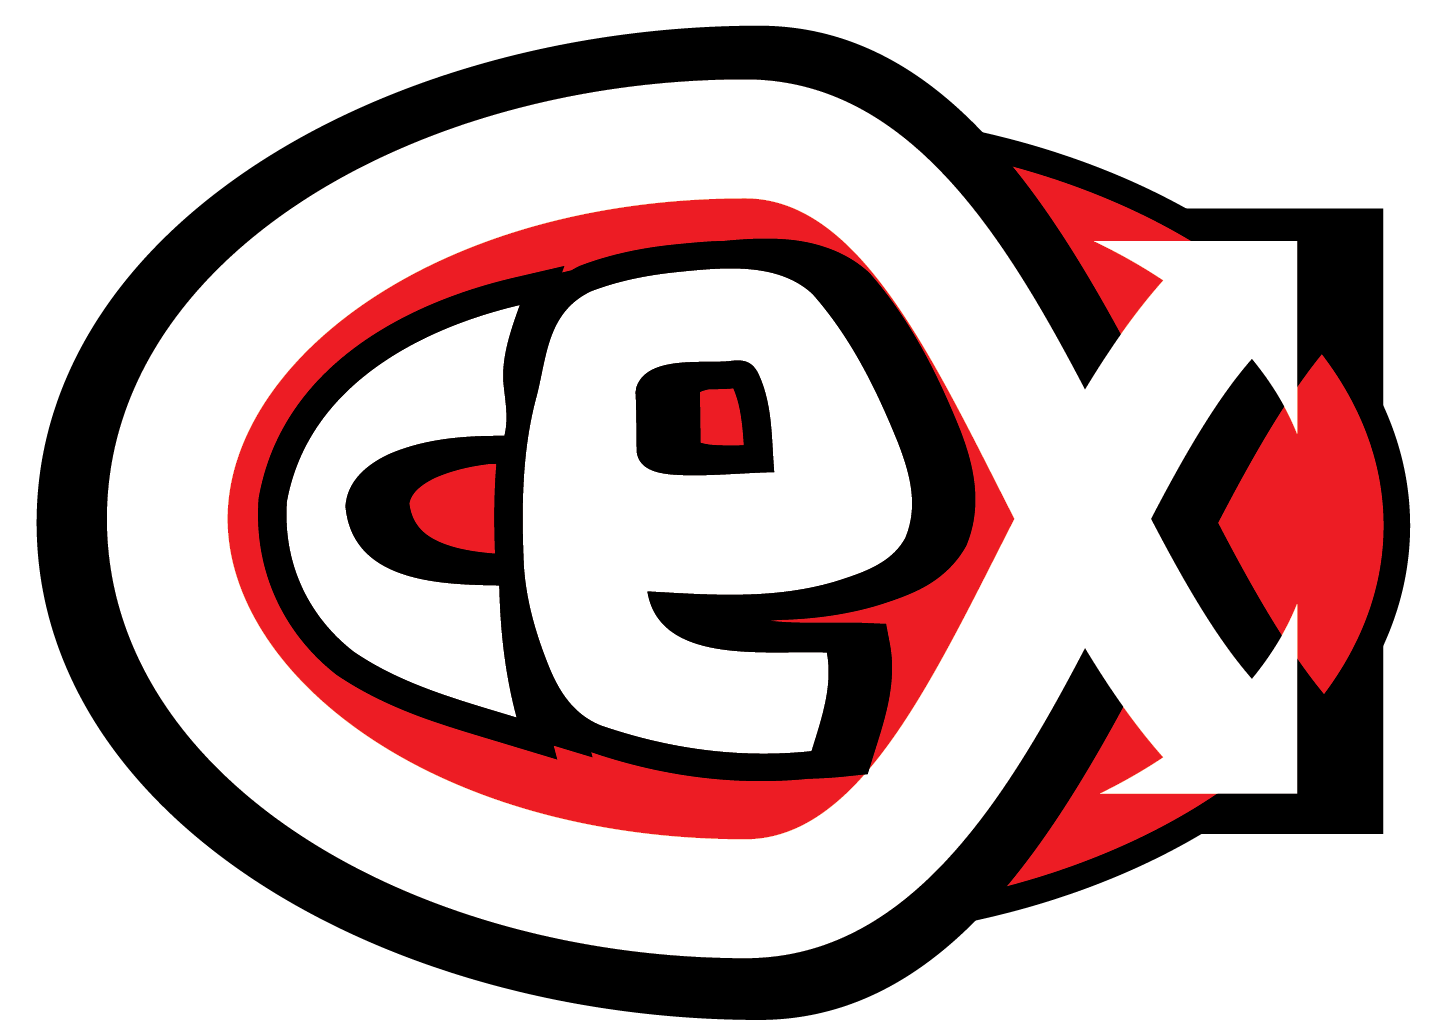 CeX Logo - Cex logo